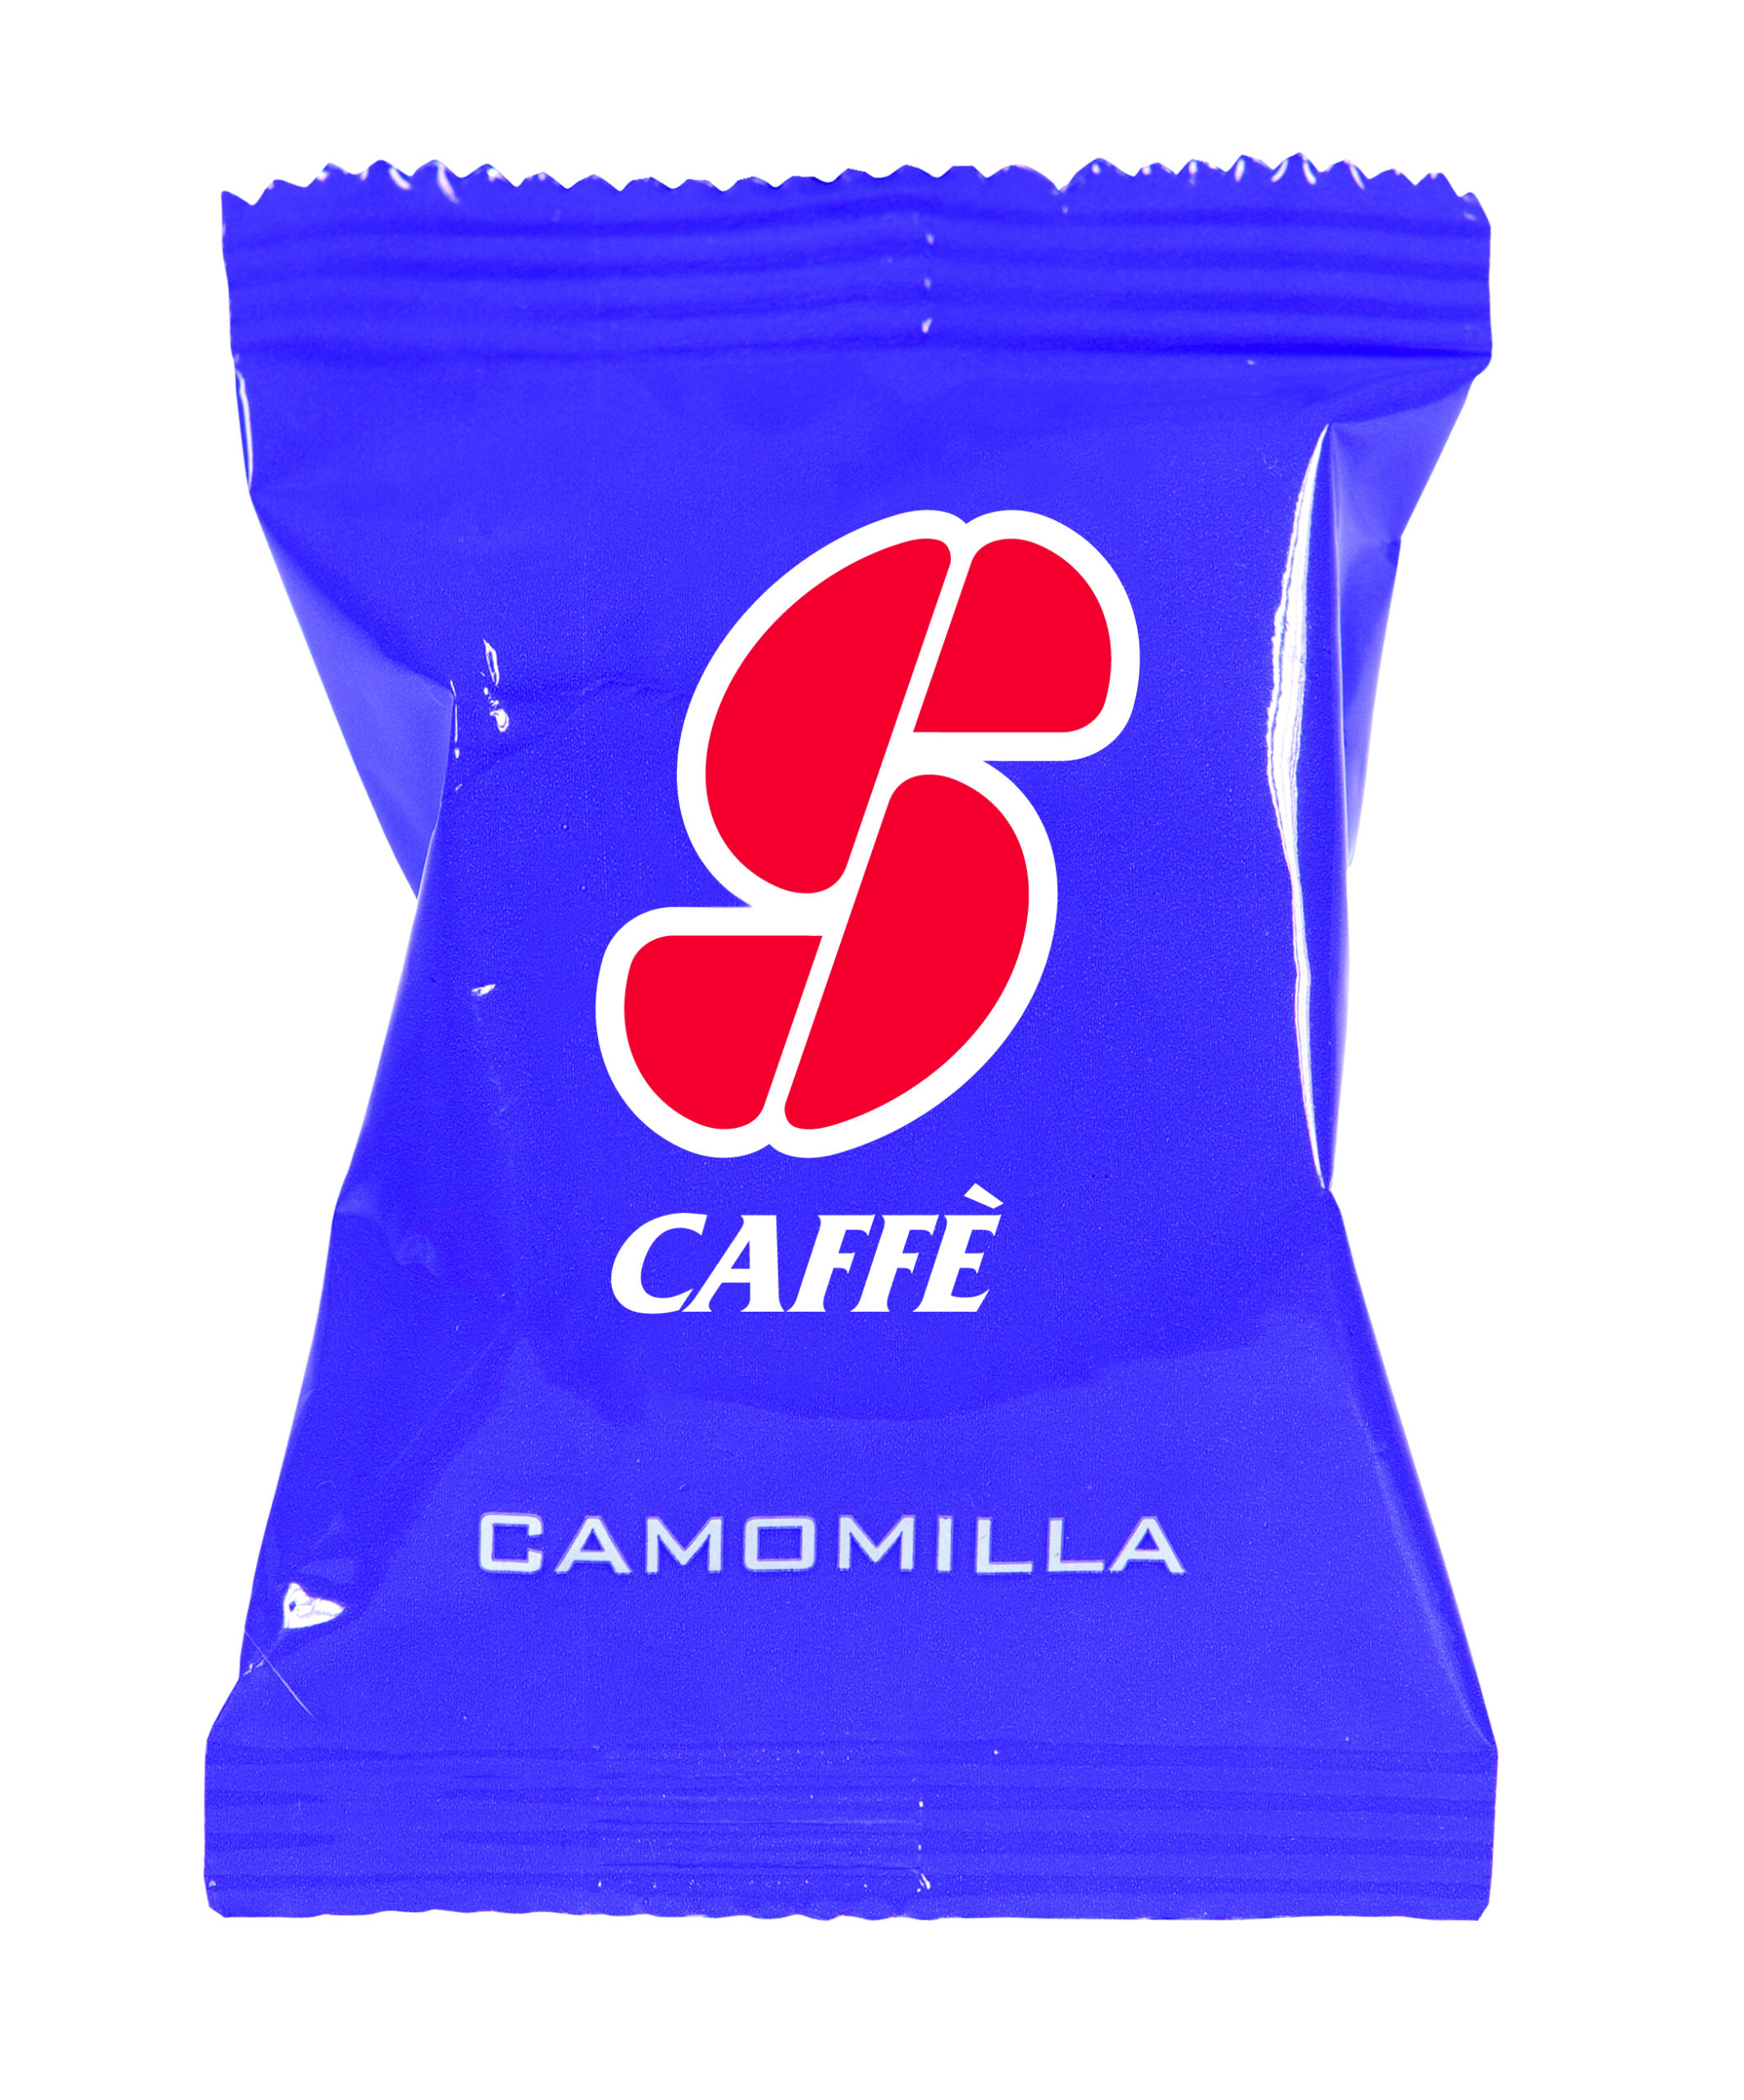 Capsula Camomilla Essse Caffe 39 Pf 2214 79135 a